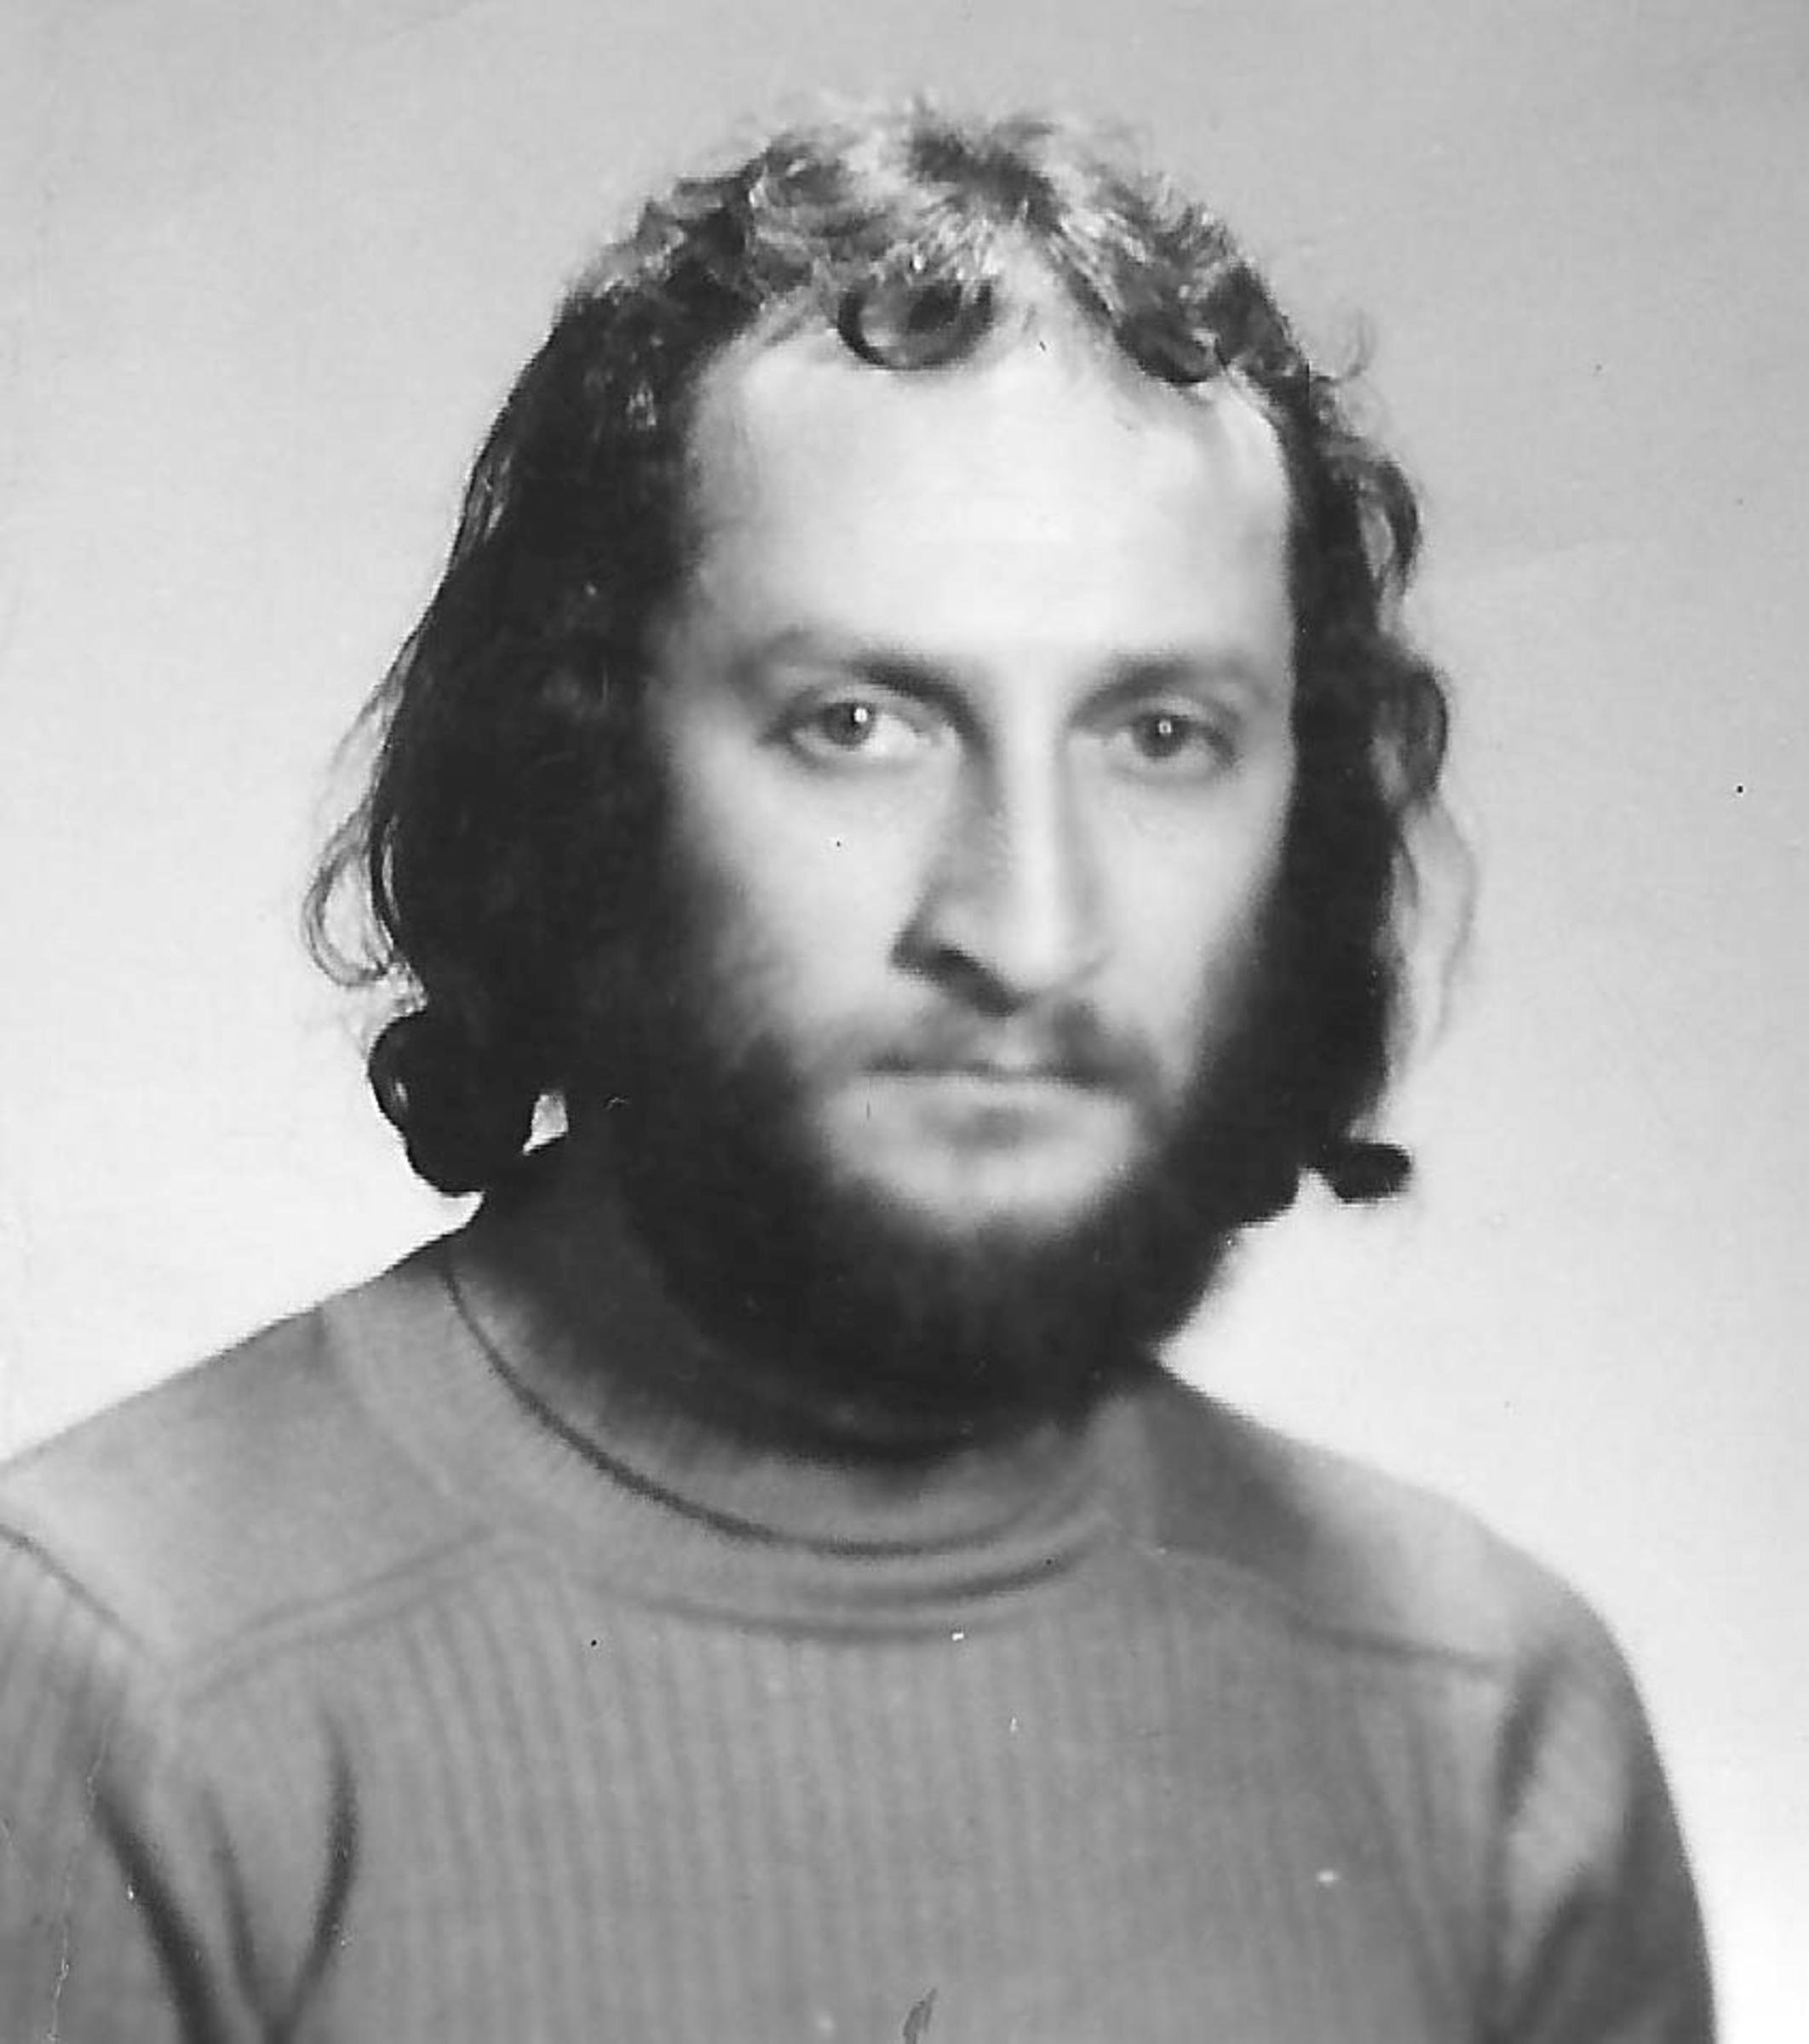 Ivan Bukovský, portrait, about 1980